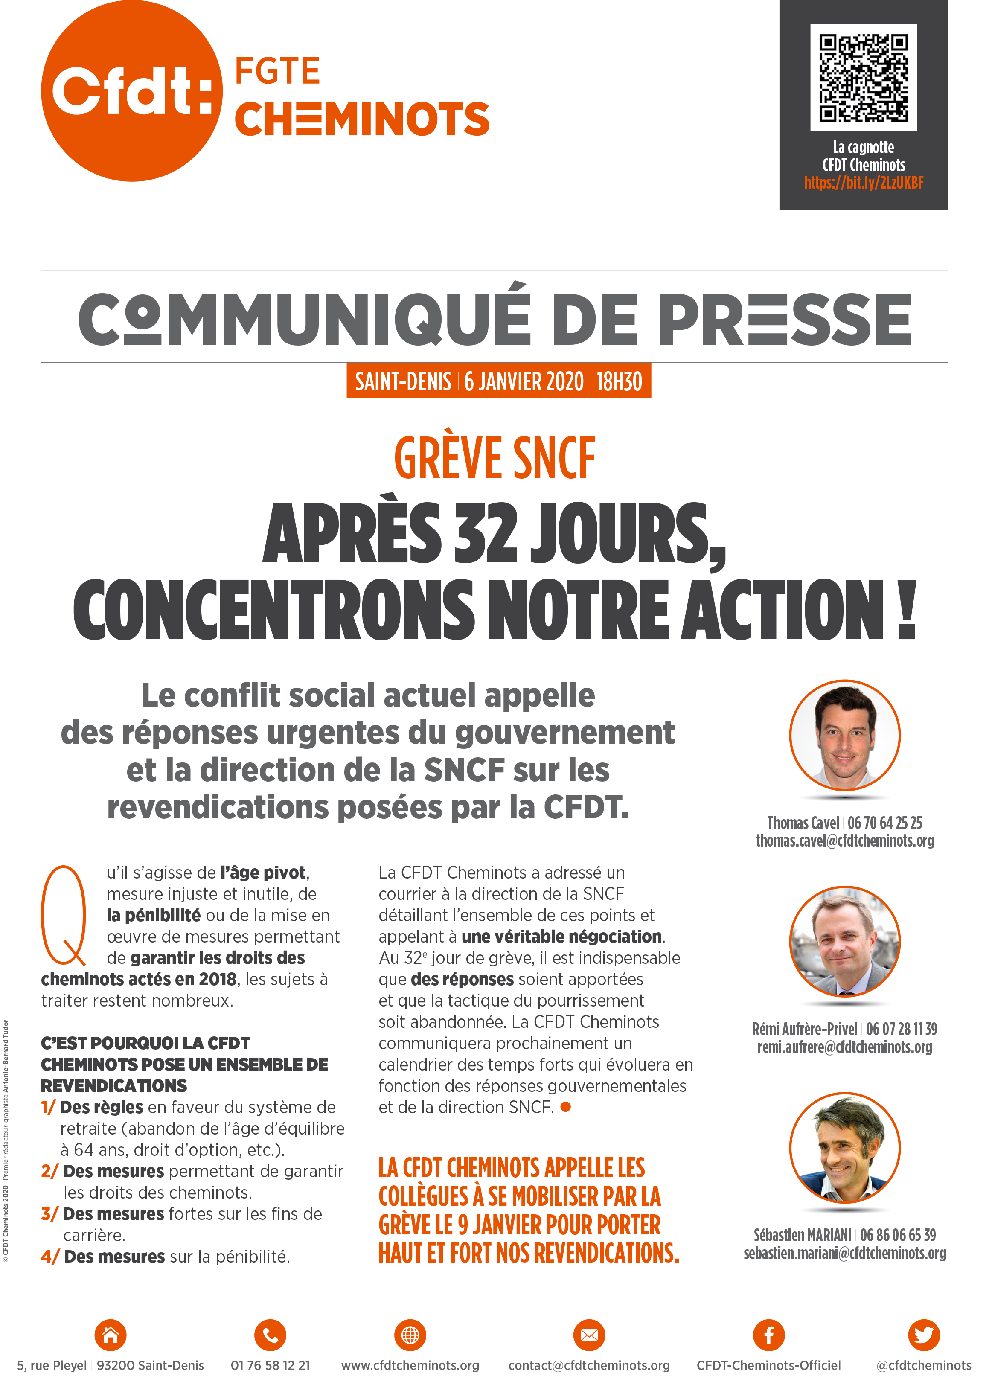 Grève SNCF, après 32 jours, concentrons notre action !